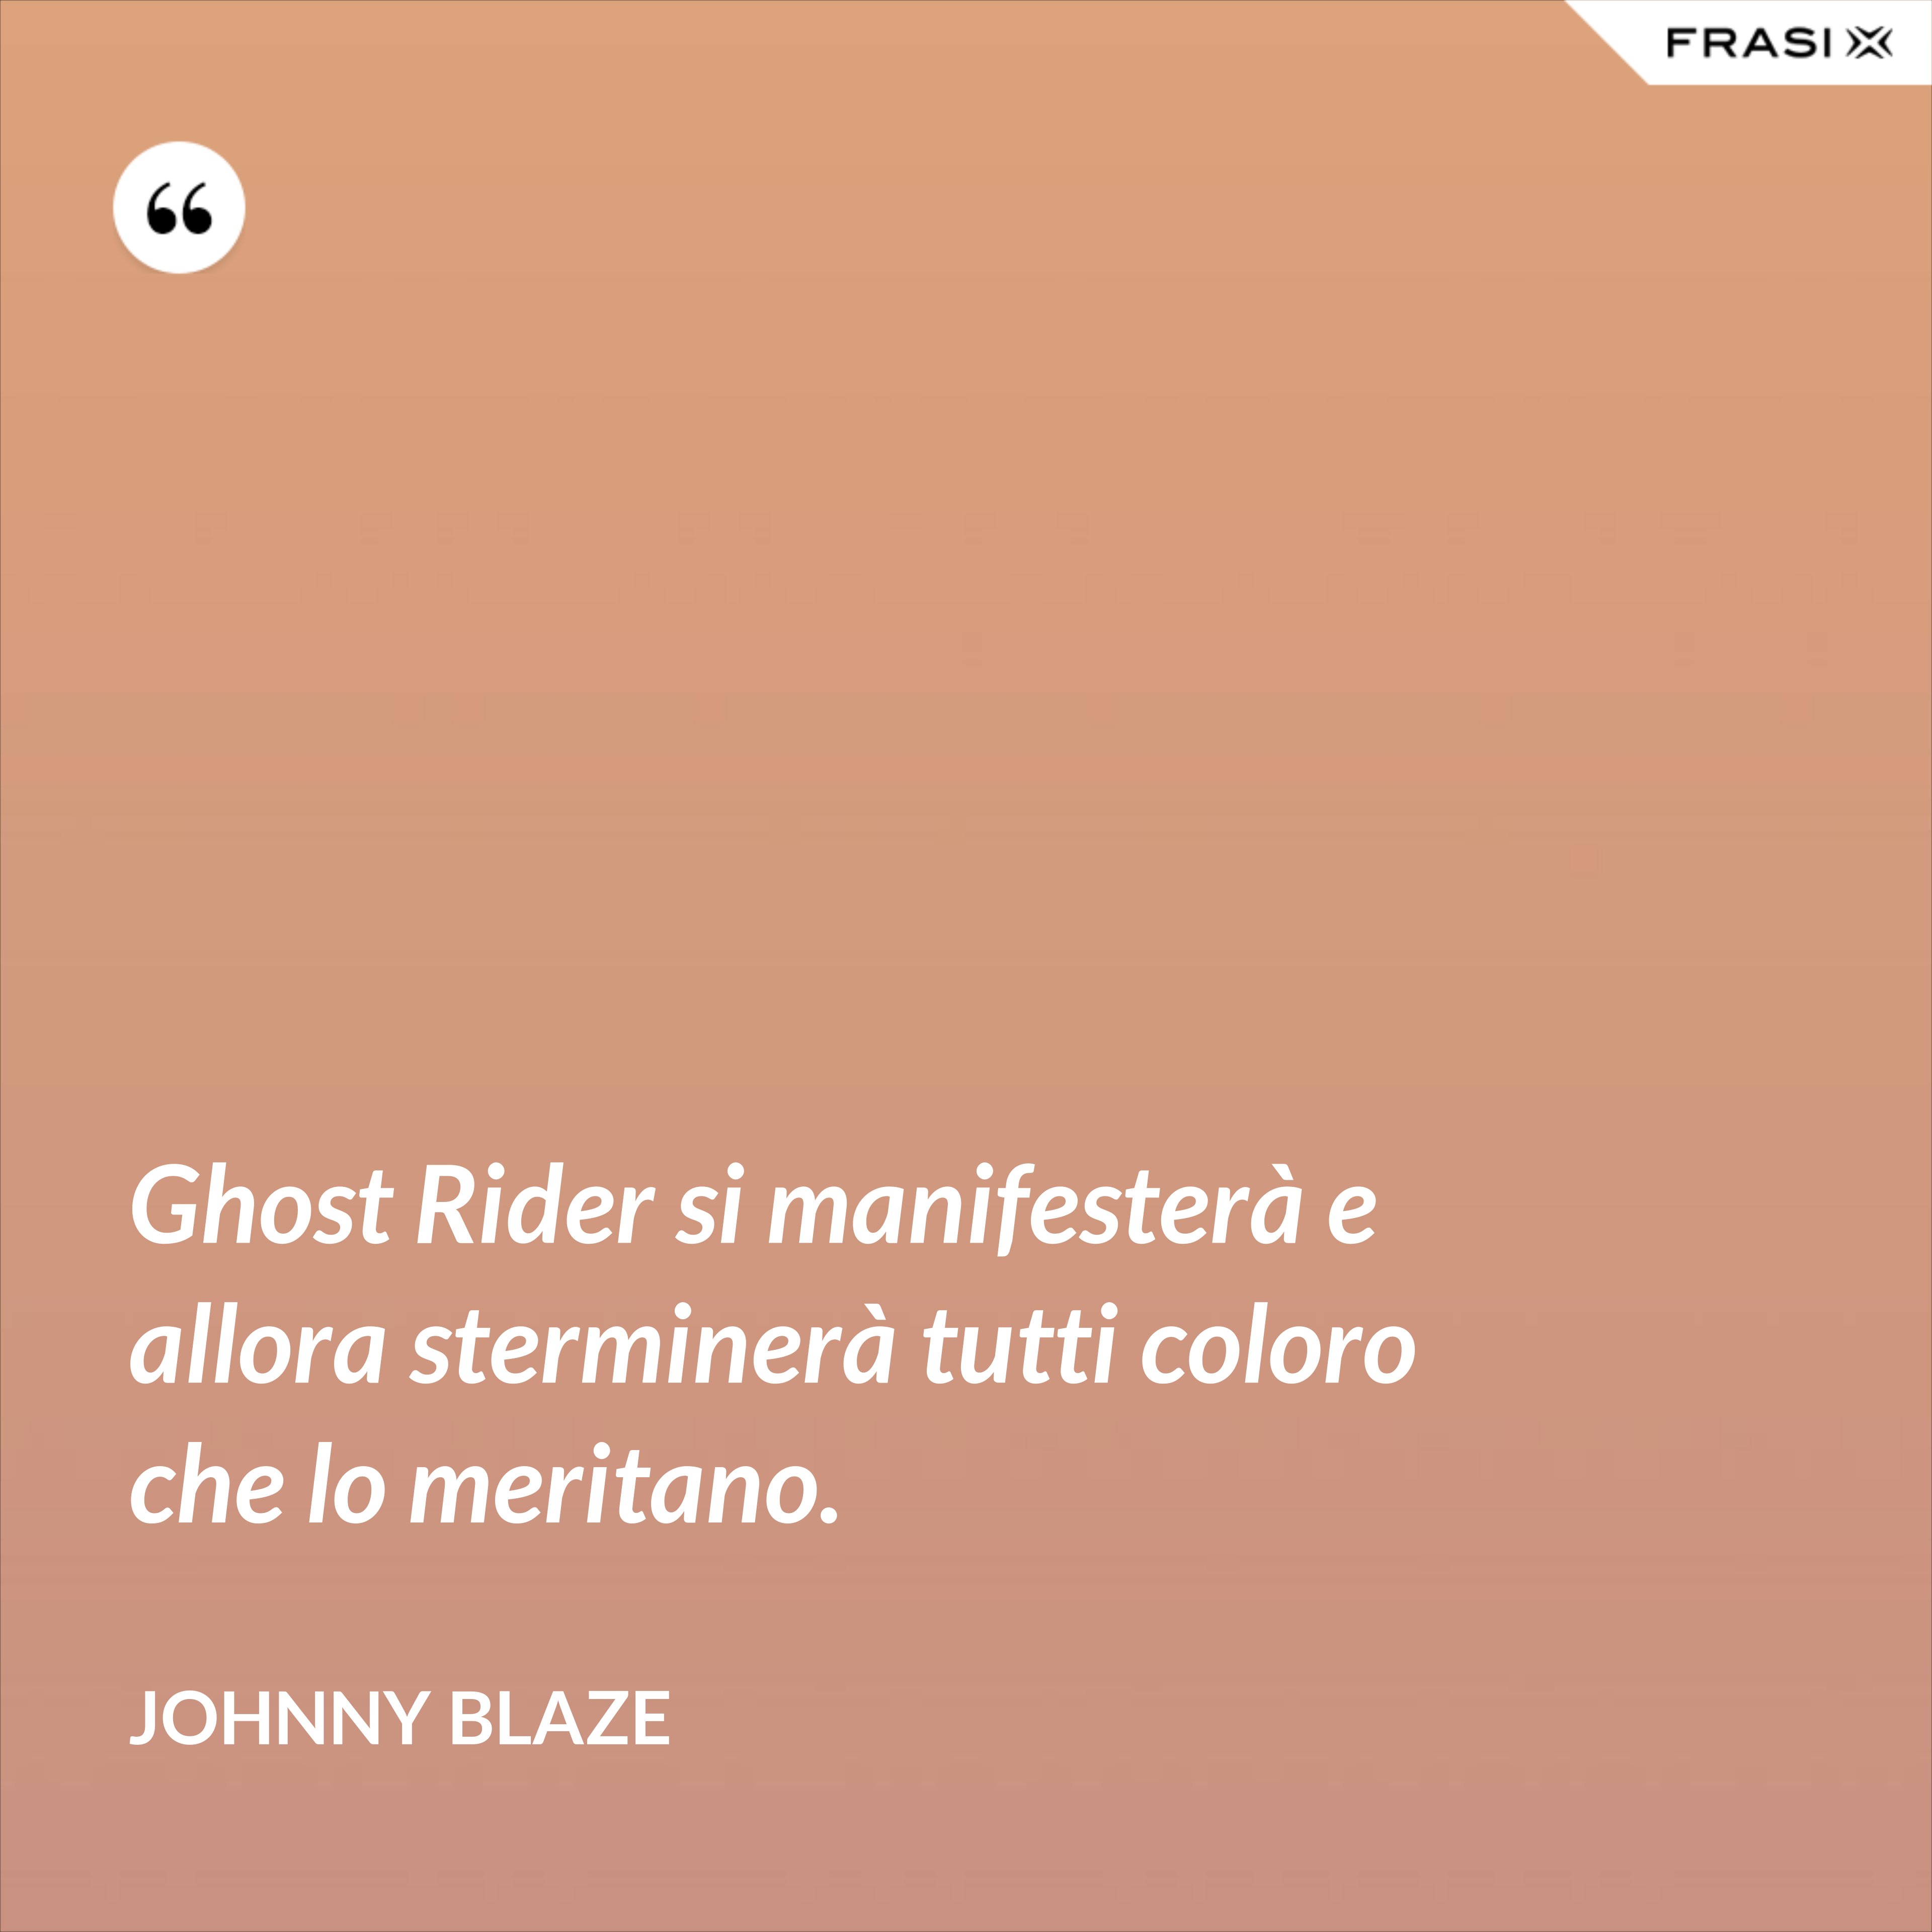 Ghost Rider si manifesterà e allora sterminerà tutti coloro che lo meritano. - Johnny Blaze